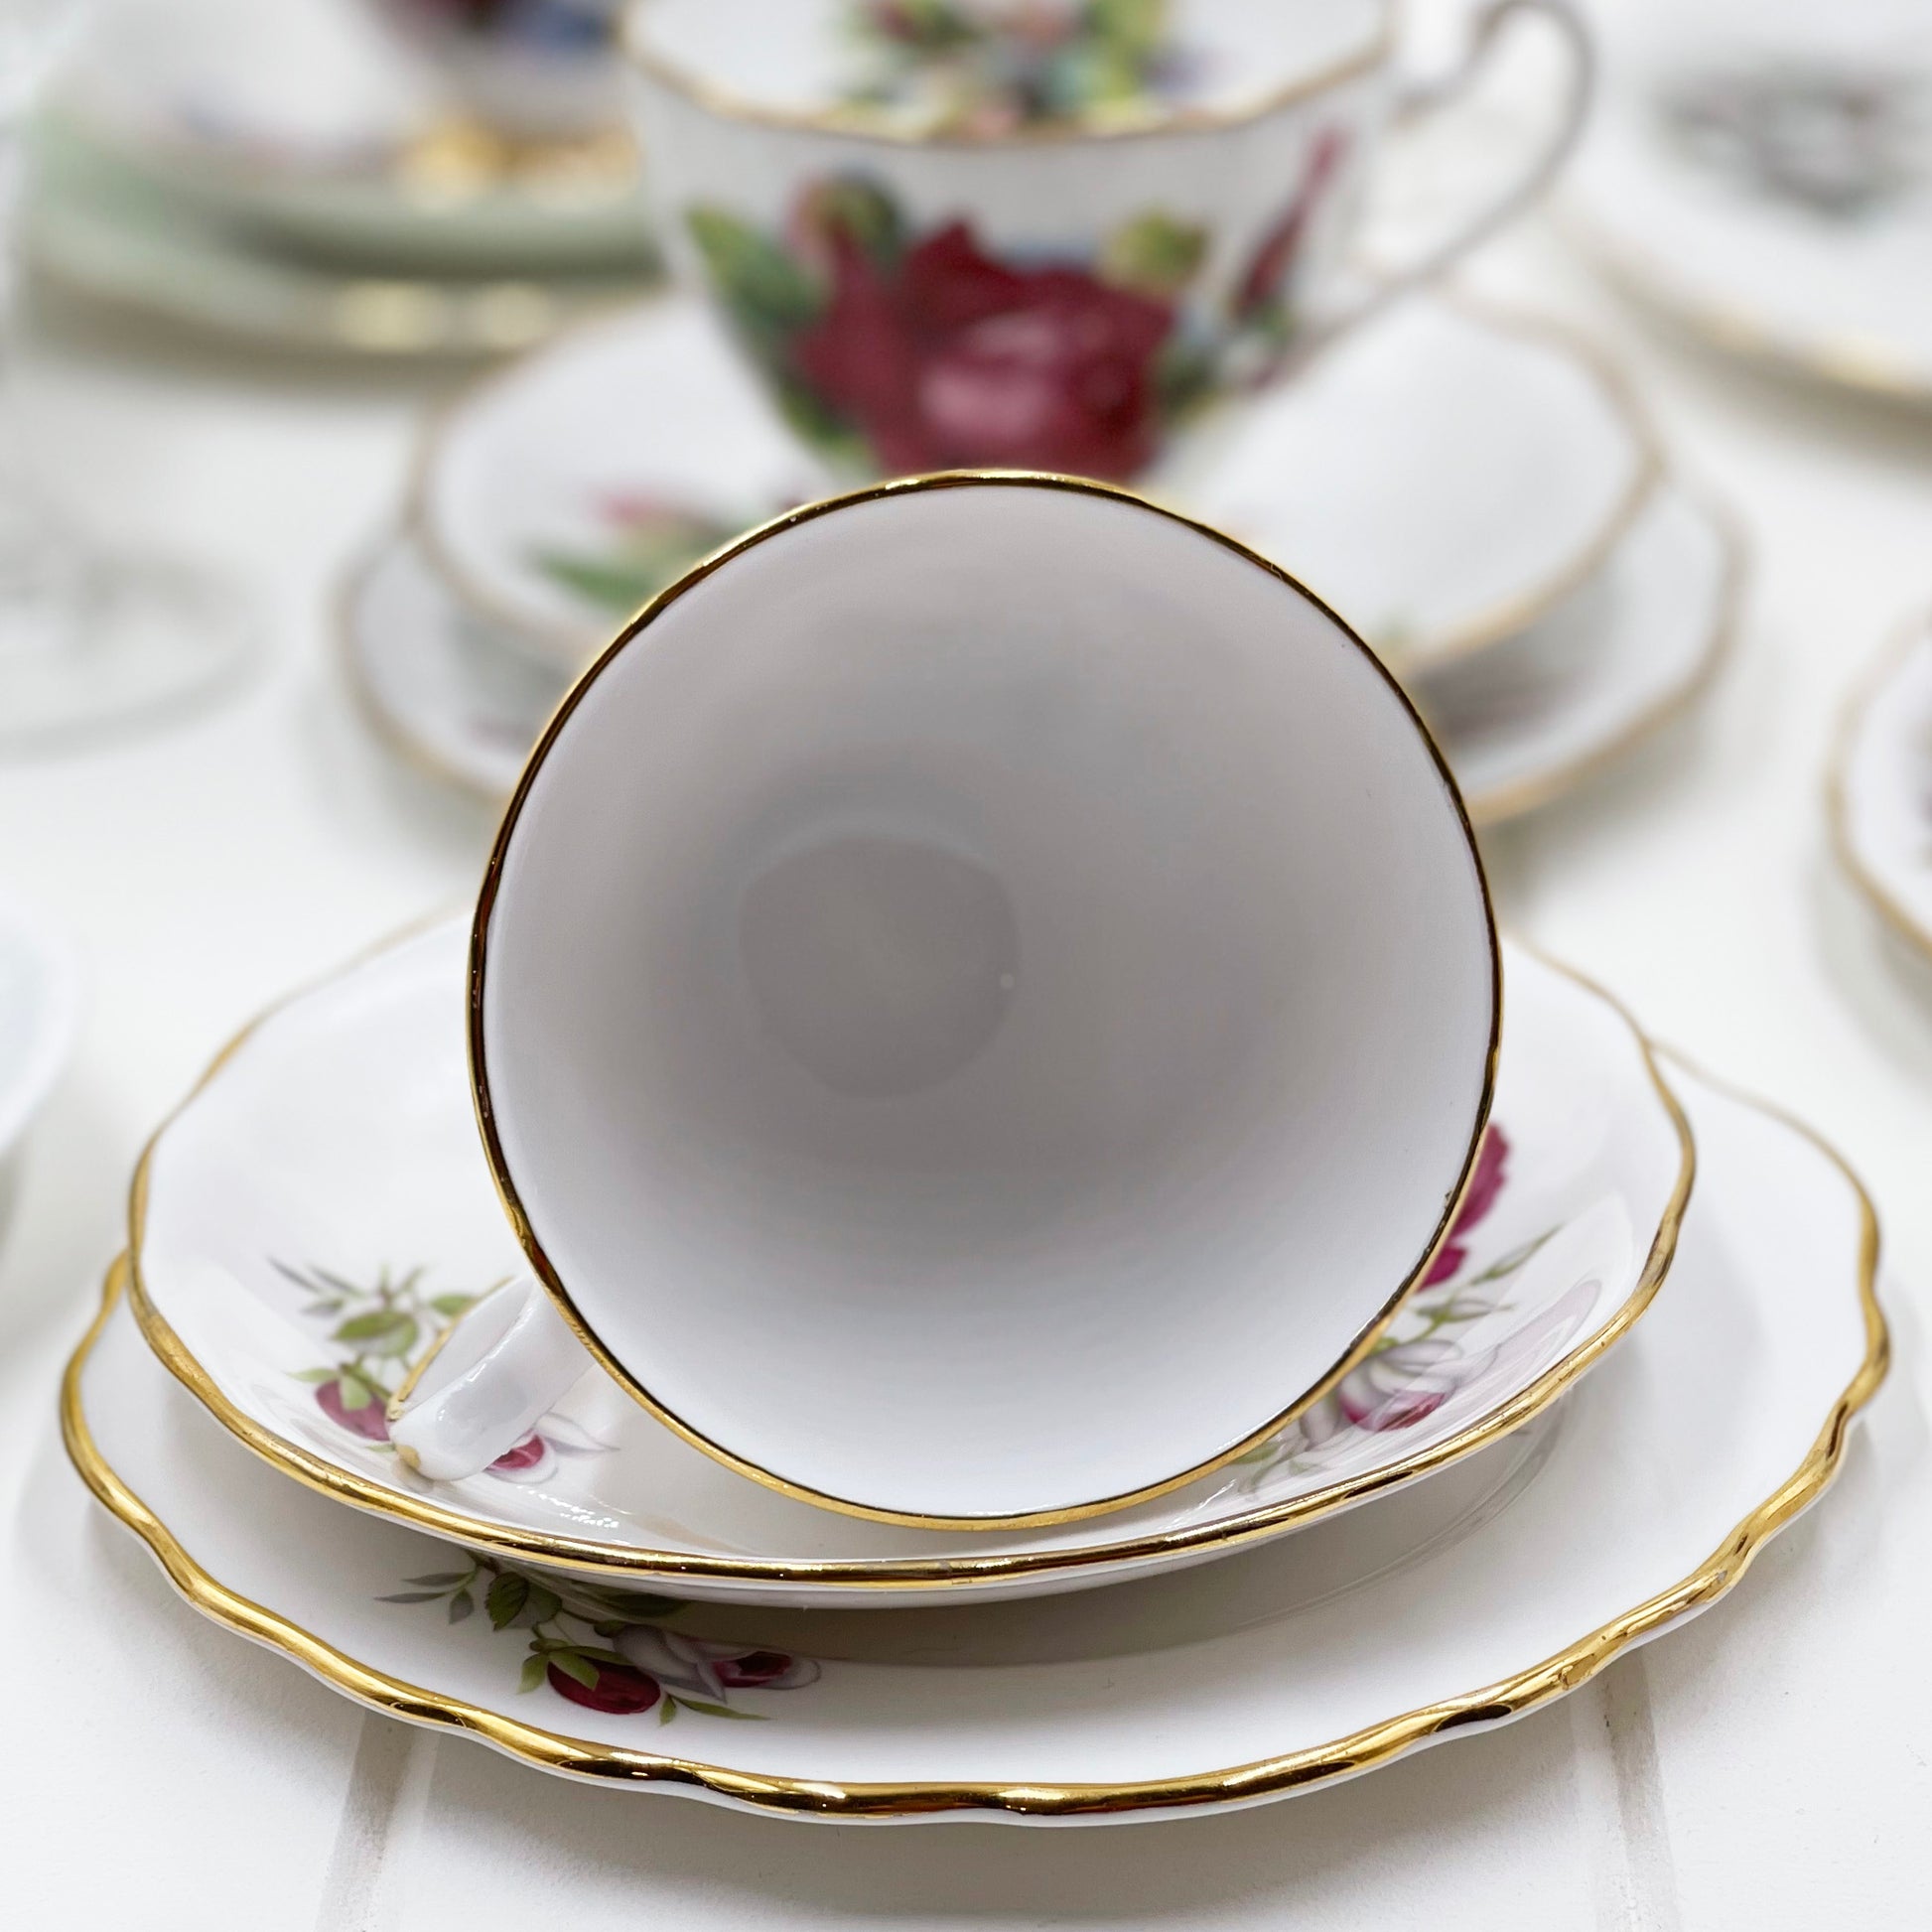 Royal Albert, Shelley, Queen Anne, Duchess, Colclough Crazy High Tea Set